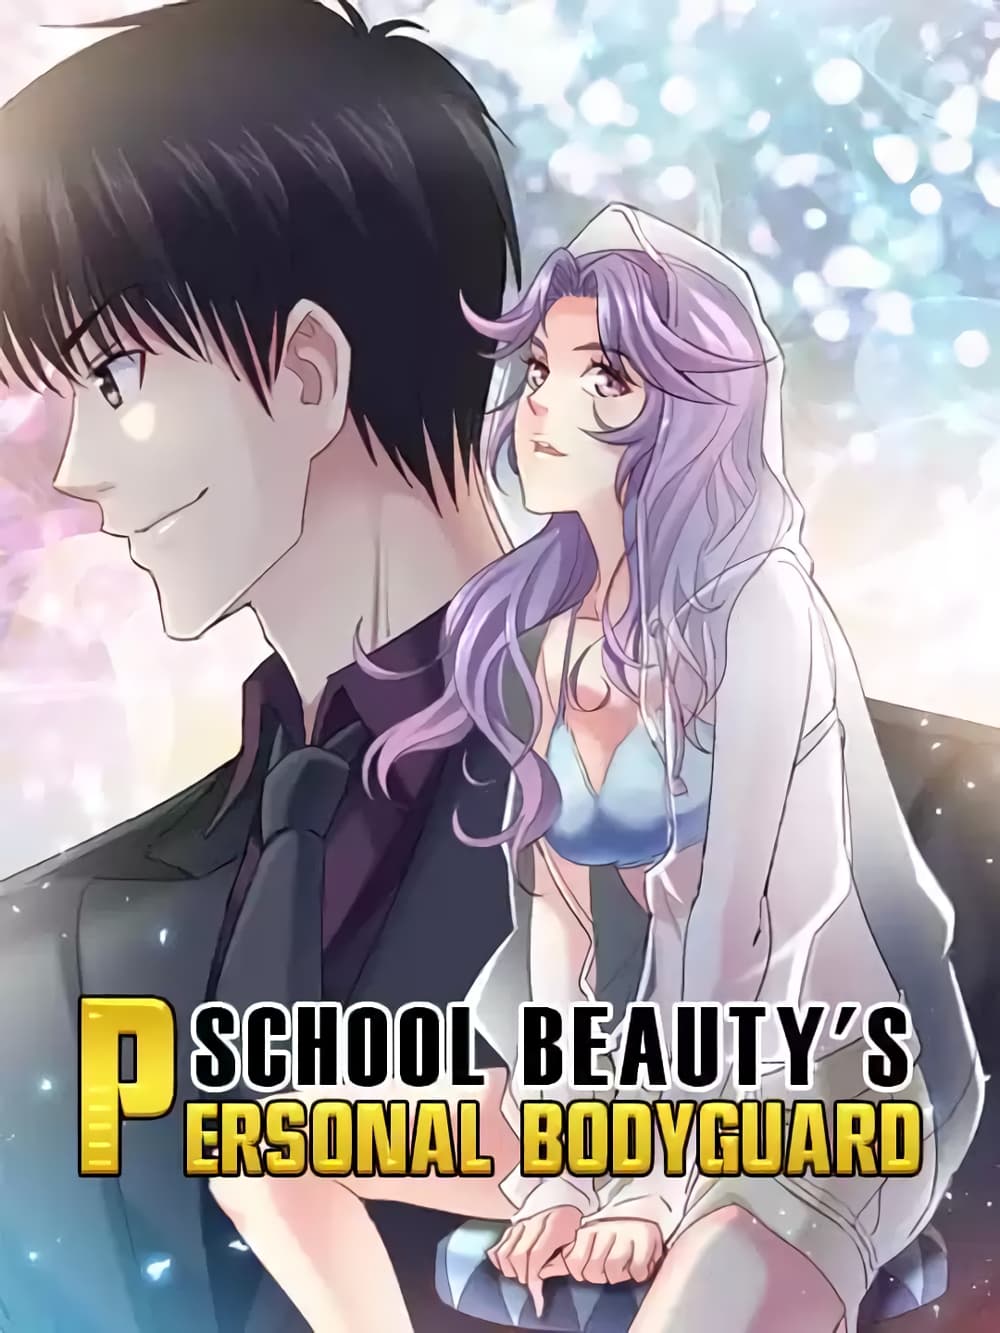 School Beauty's Bodyguard 287 (1)